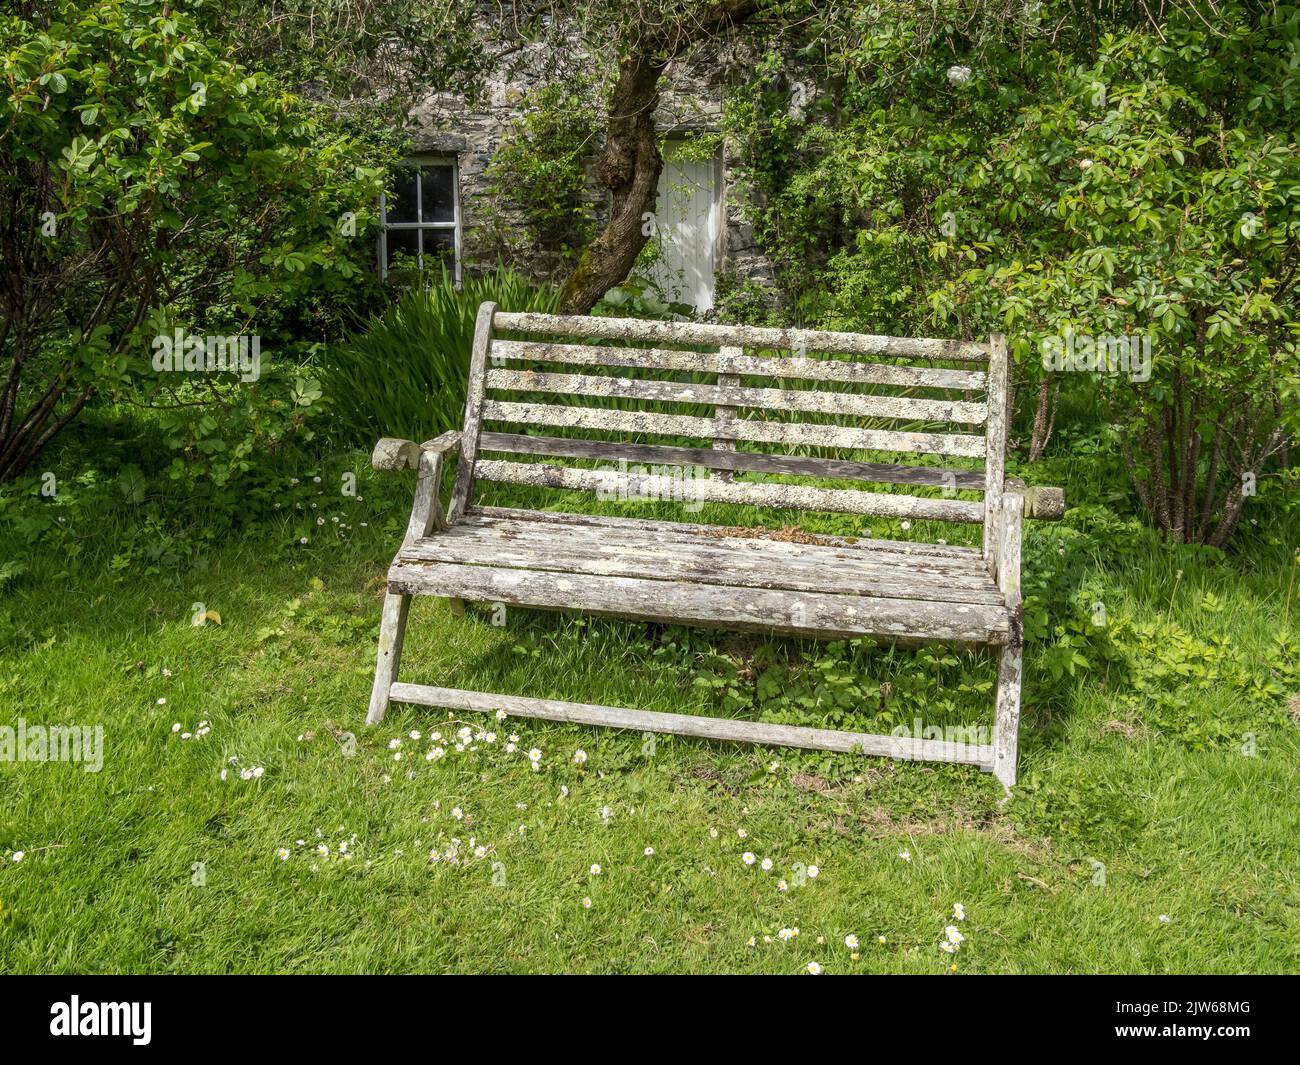 Sedile a panca in legno vecchio giardino coperto con lichen Colonsay House Gardens, Isola di Colonsay, Scozia, Regno Unito. Foto Stock